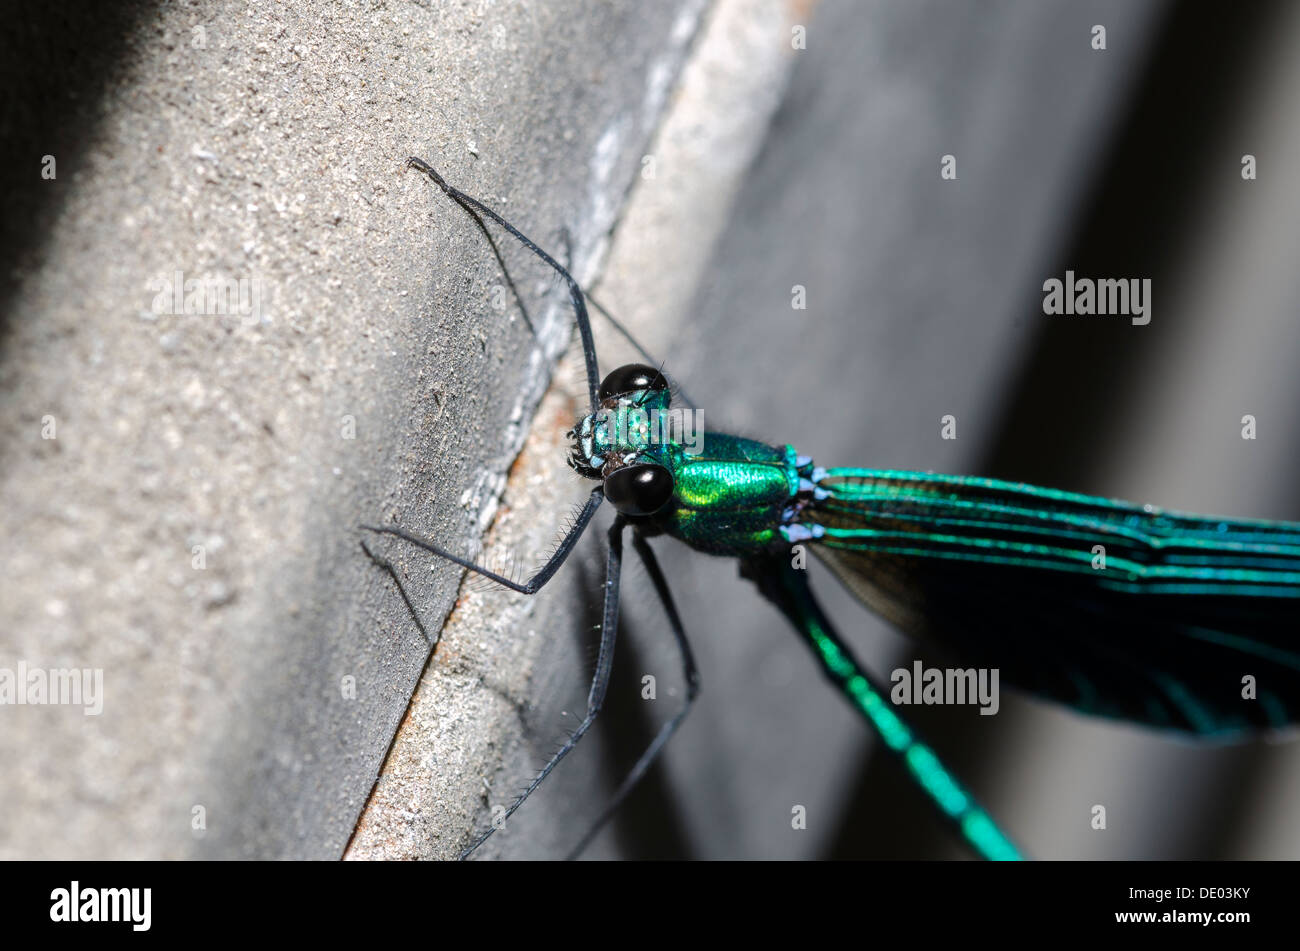 Macro Fotografía de una libélula con alas azul Foto de stock